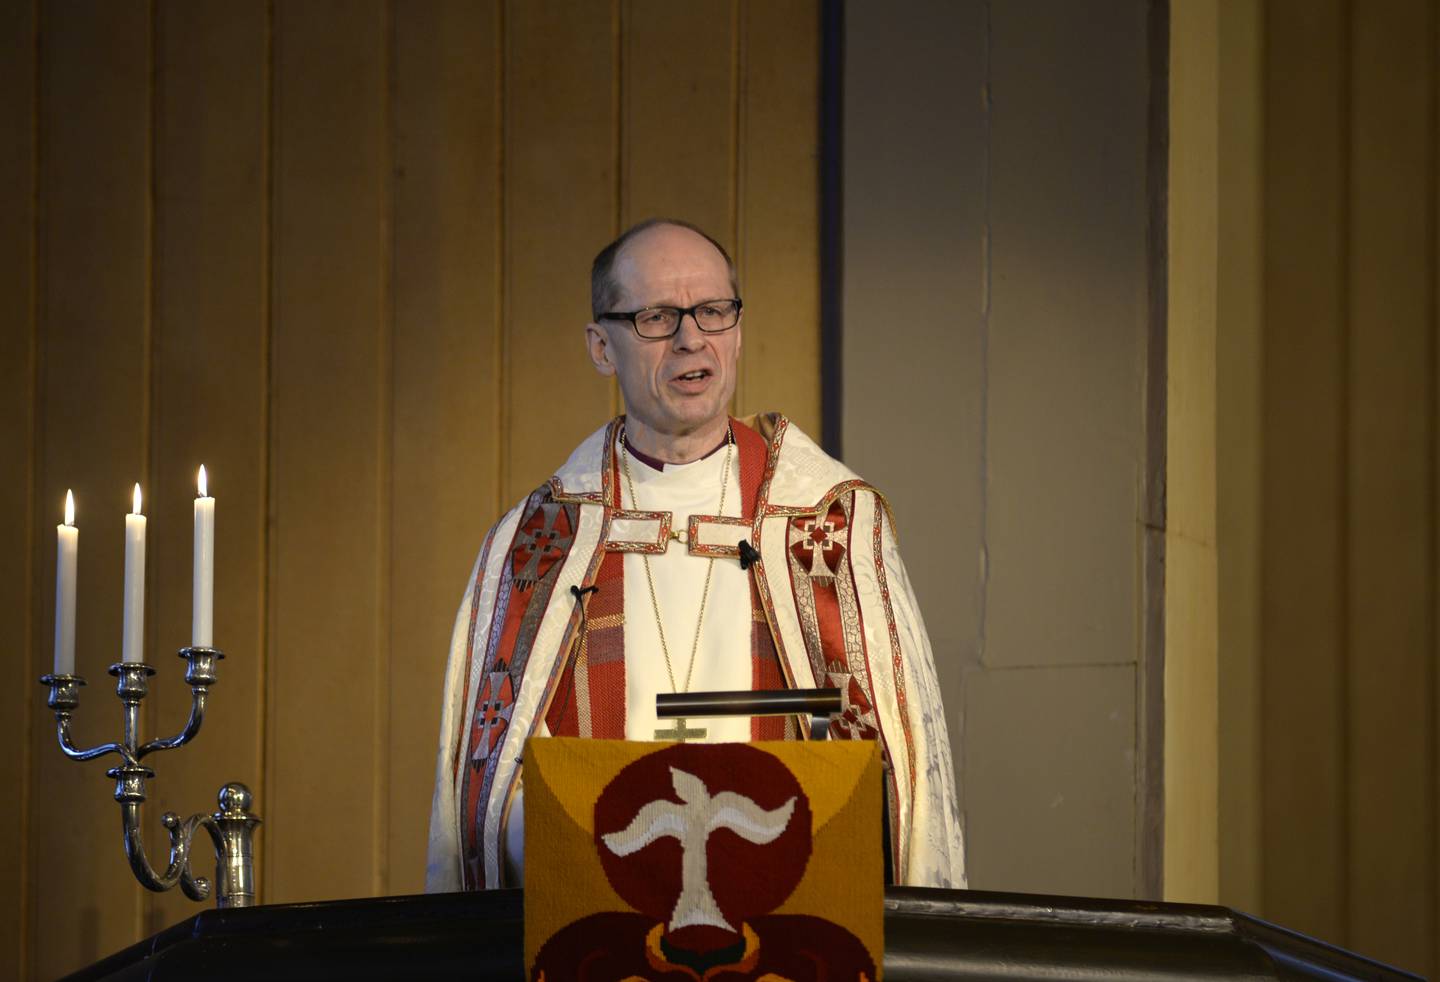 FORFALL: – Det begynner å bli dramatisk for flere av kirkene. Derfor utfordrer jeg kirkelige og nasjonale myndigheter til å gjøre noe med dette, sier Olav Øygard, biskopen i Nord-Hålogaland.